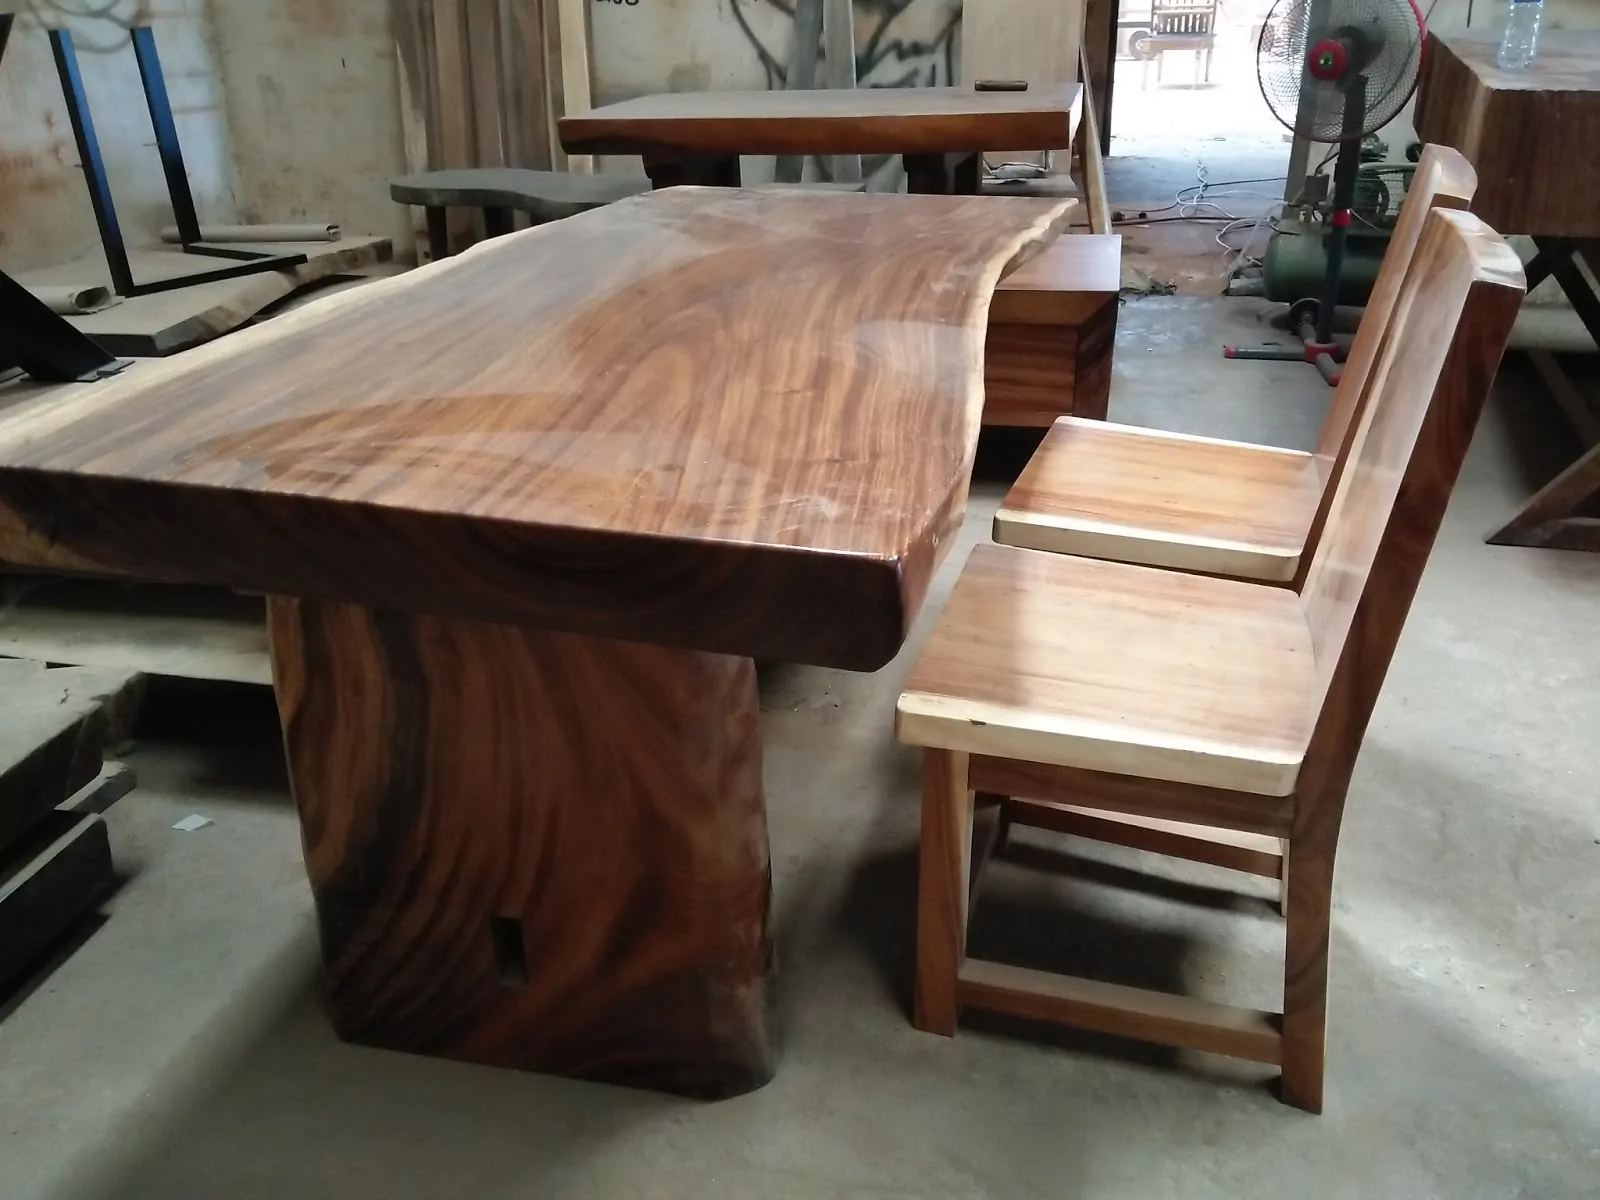 Jasa pembuatan meja kayu